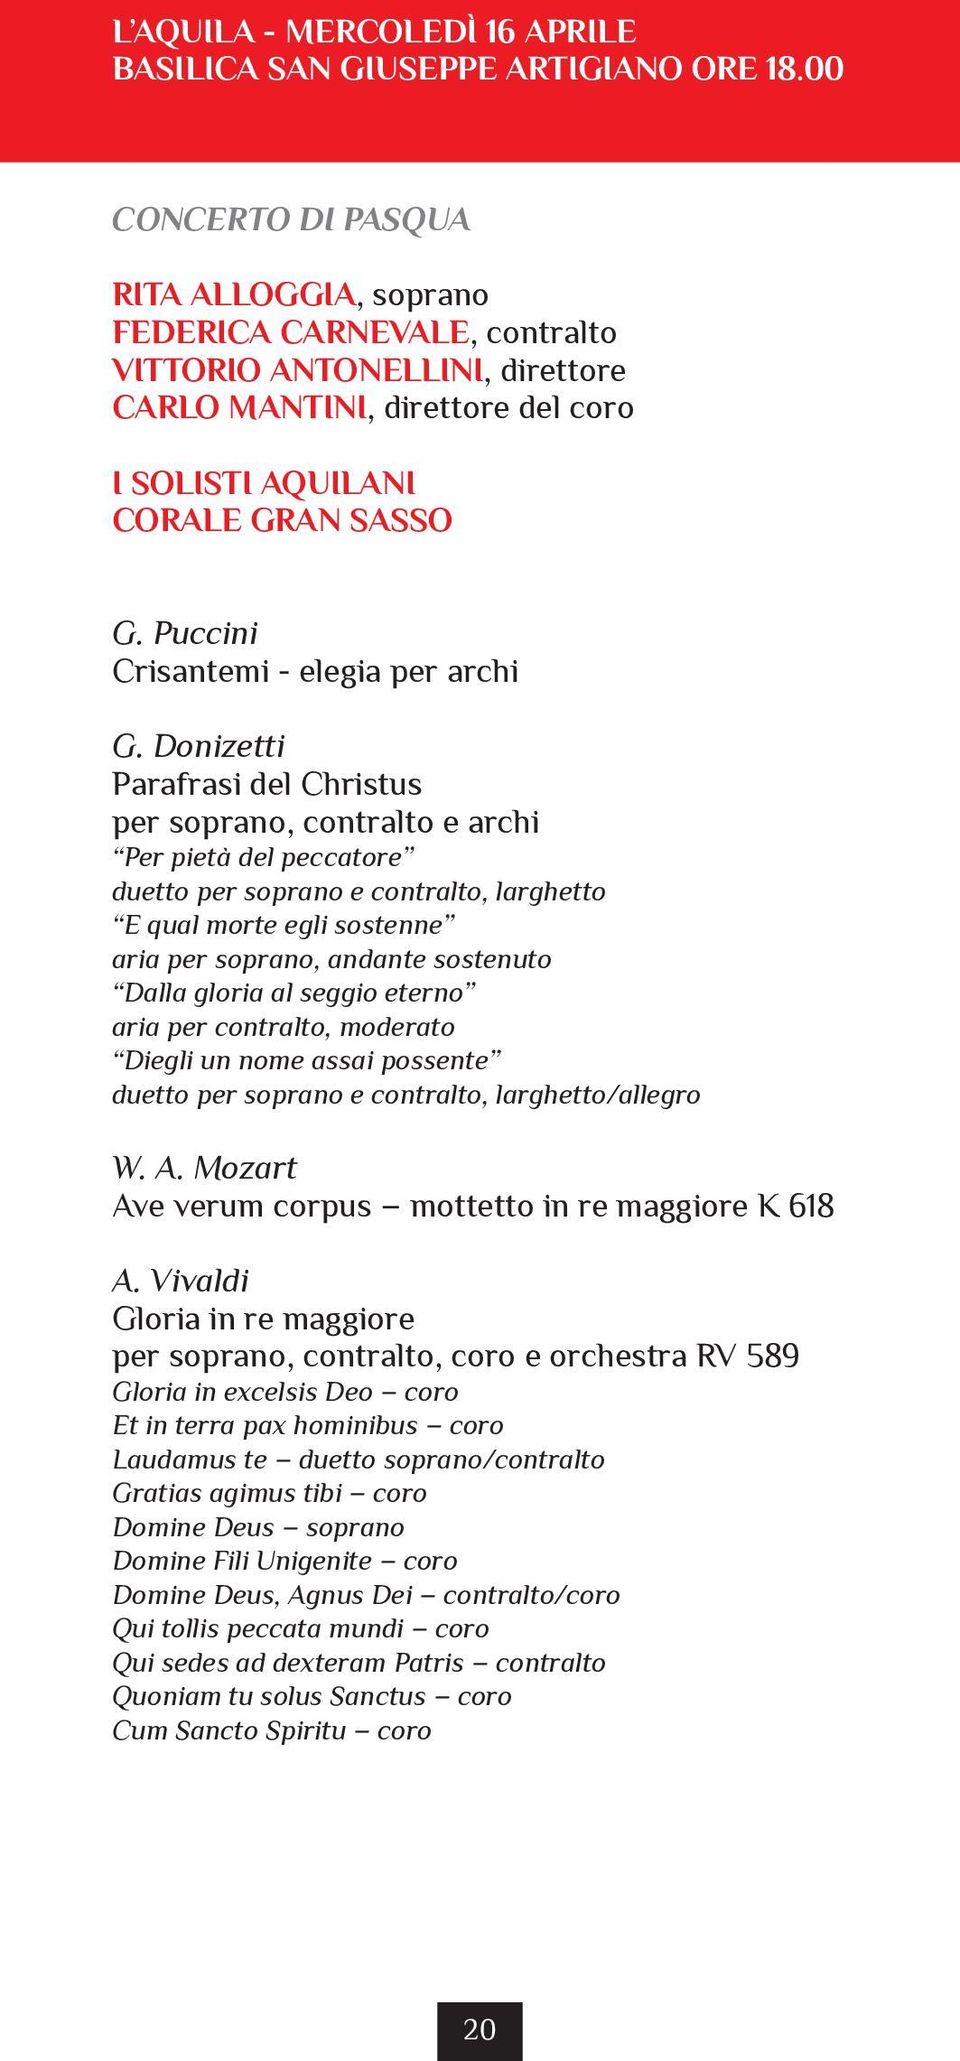 Puccini Crisantemi - elegia per archi G.